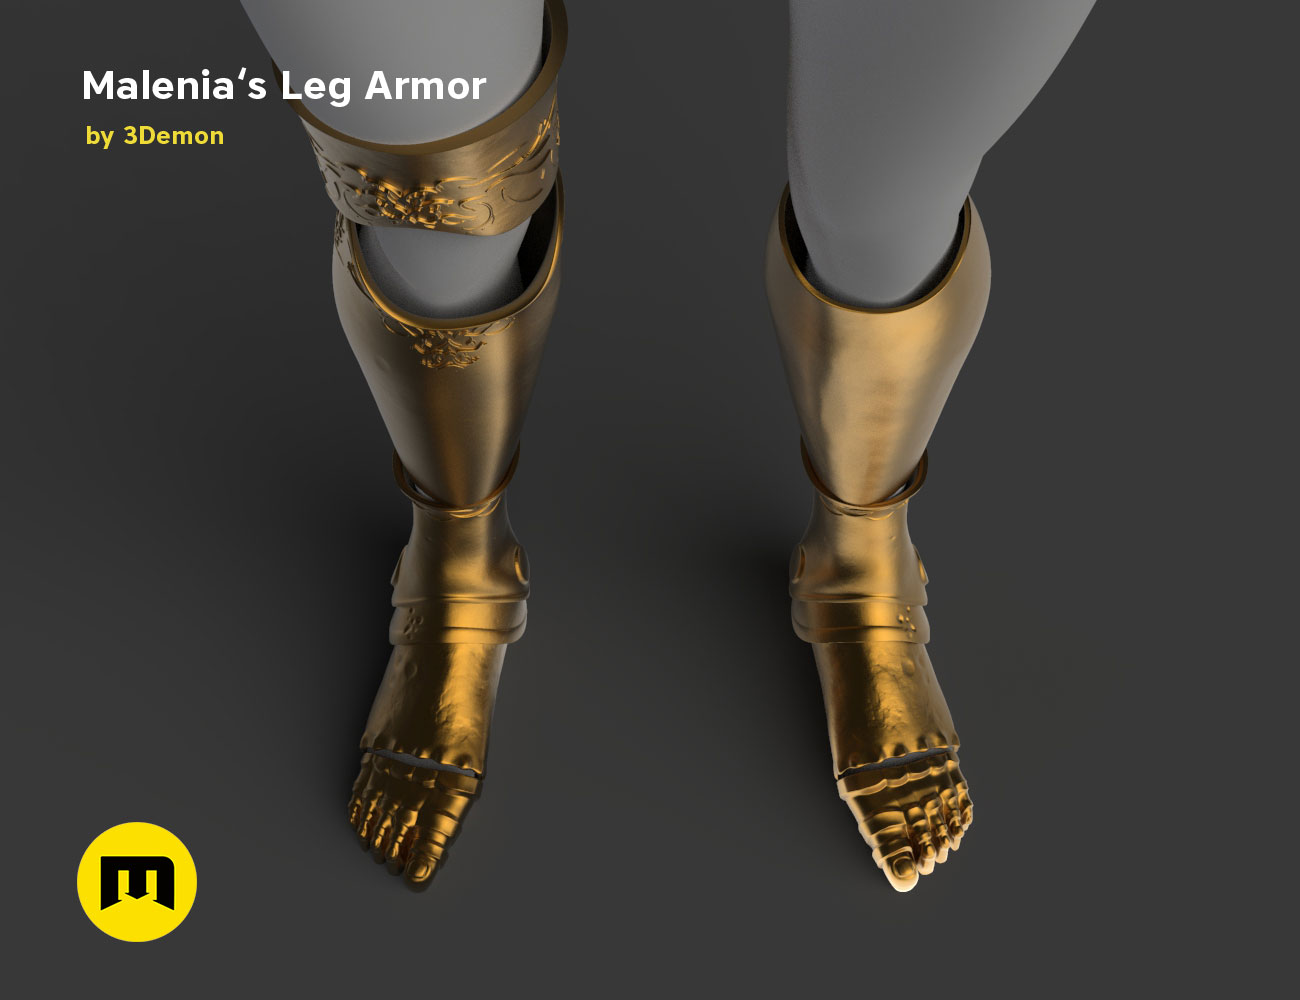 Elden Ring - Malenia's Leg Armor